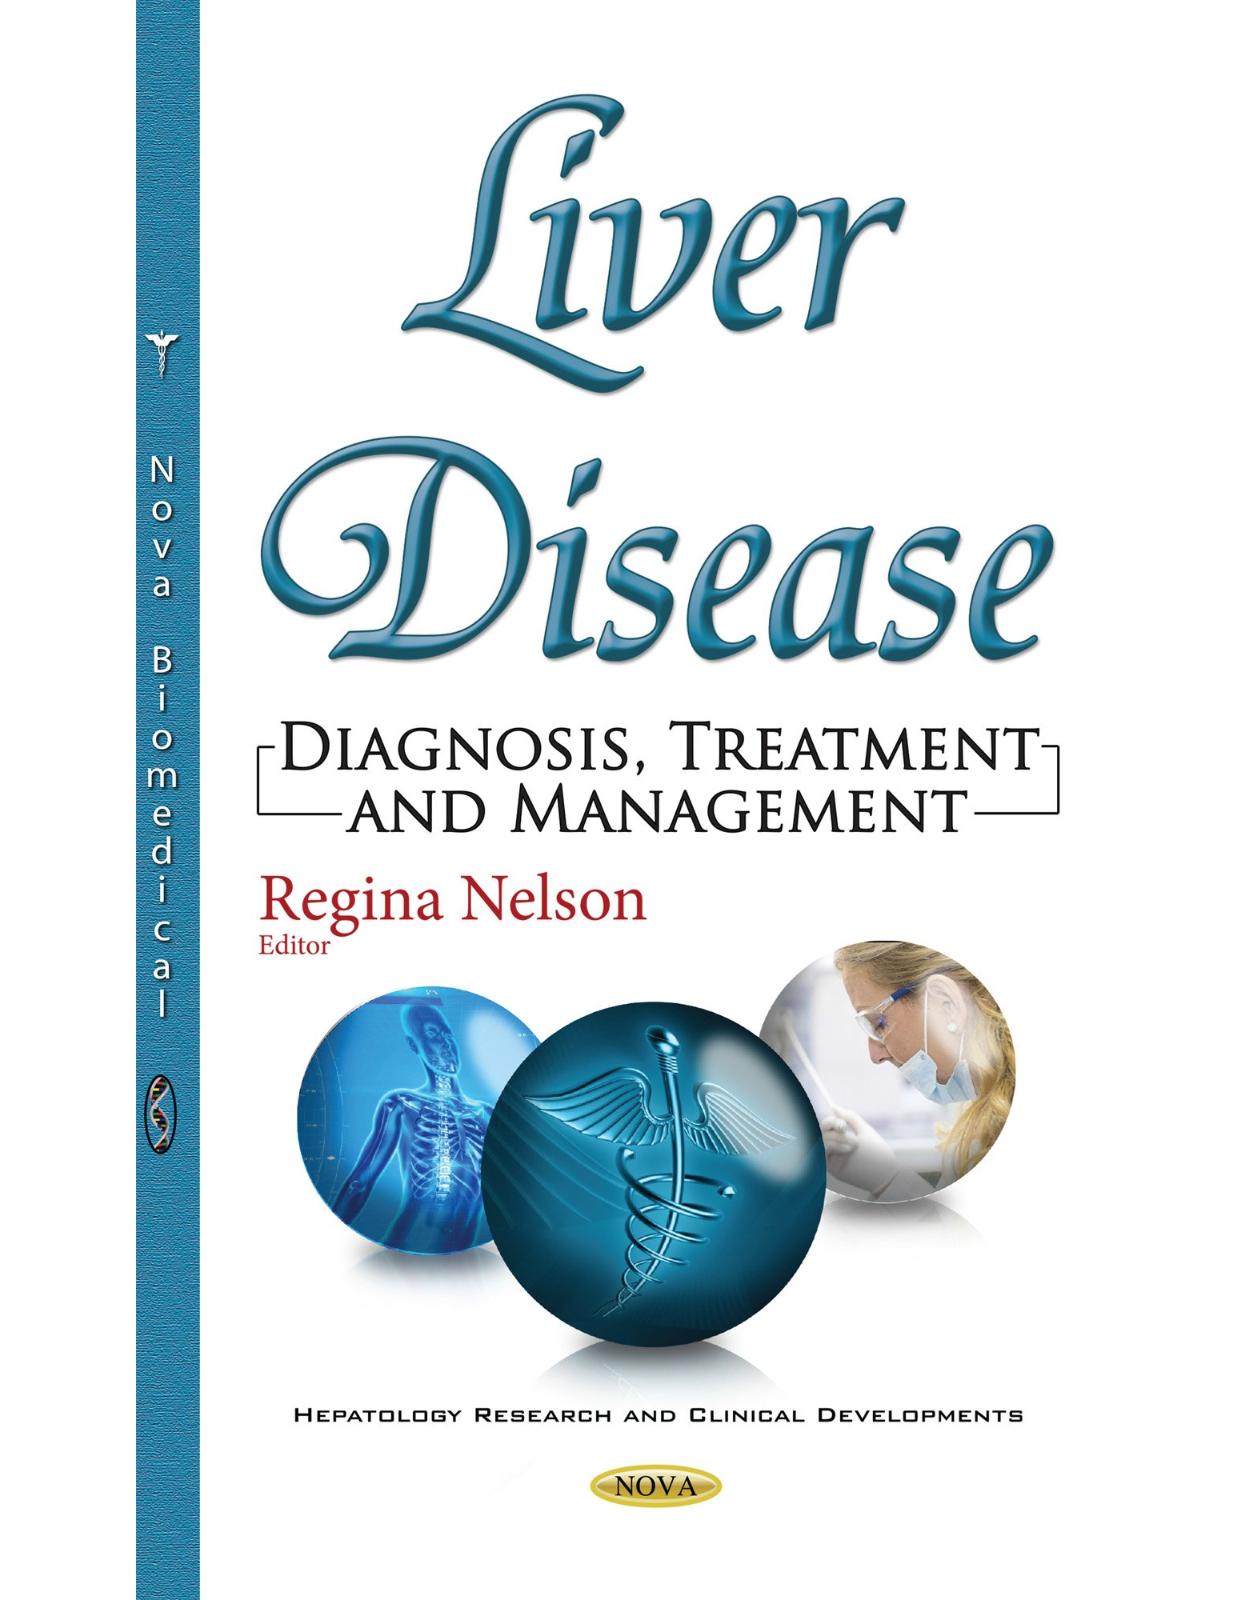 Liver Disease: Diagnosis, Treatment & Management